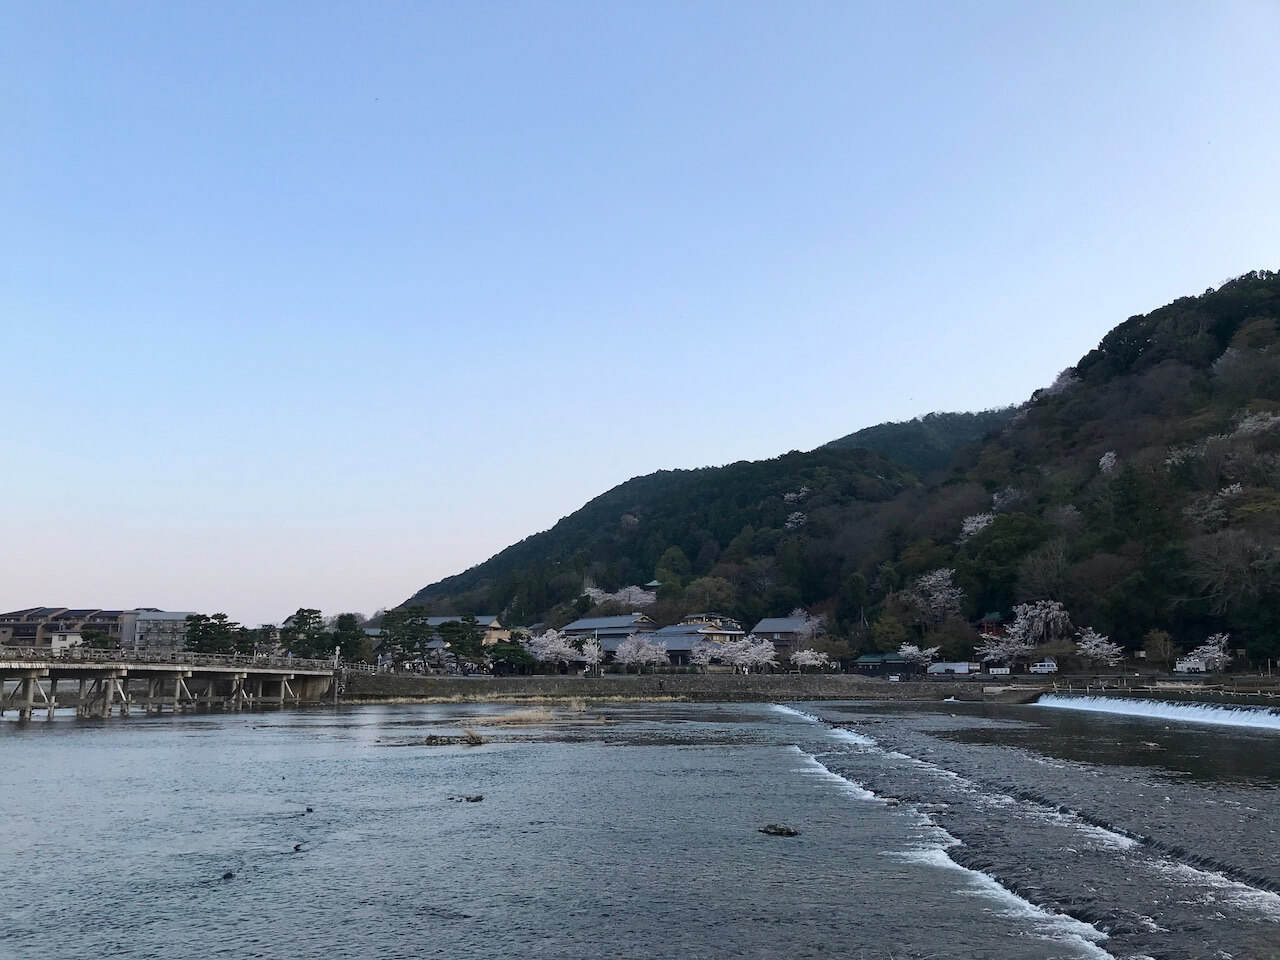 Togetsu-kyo Bridge in Arashiyama, Kyoto